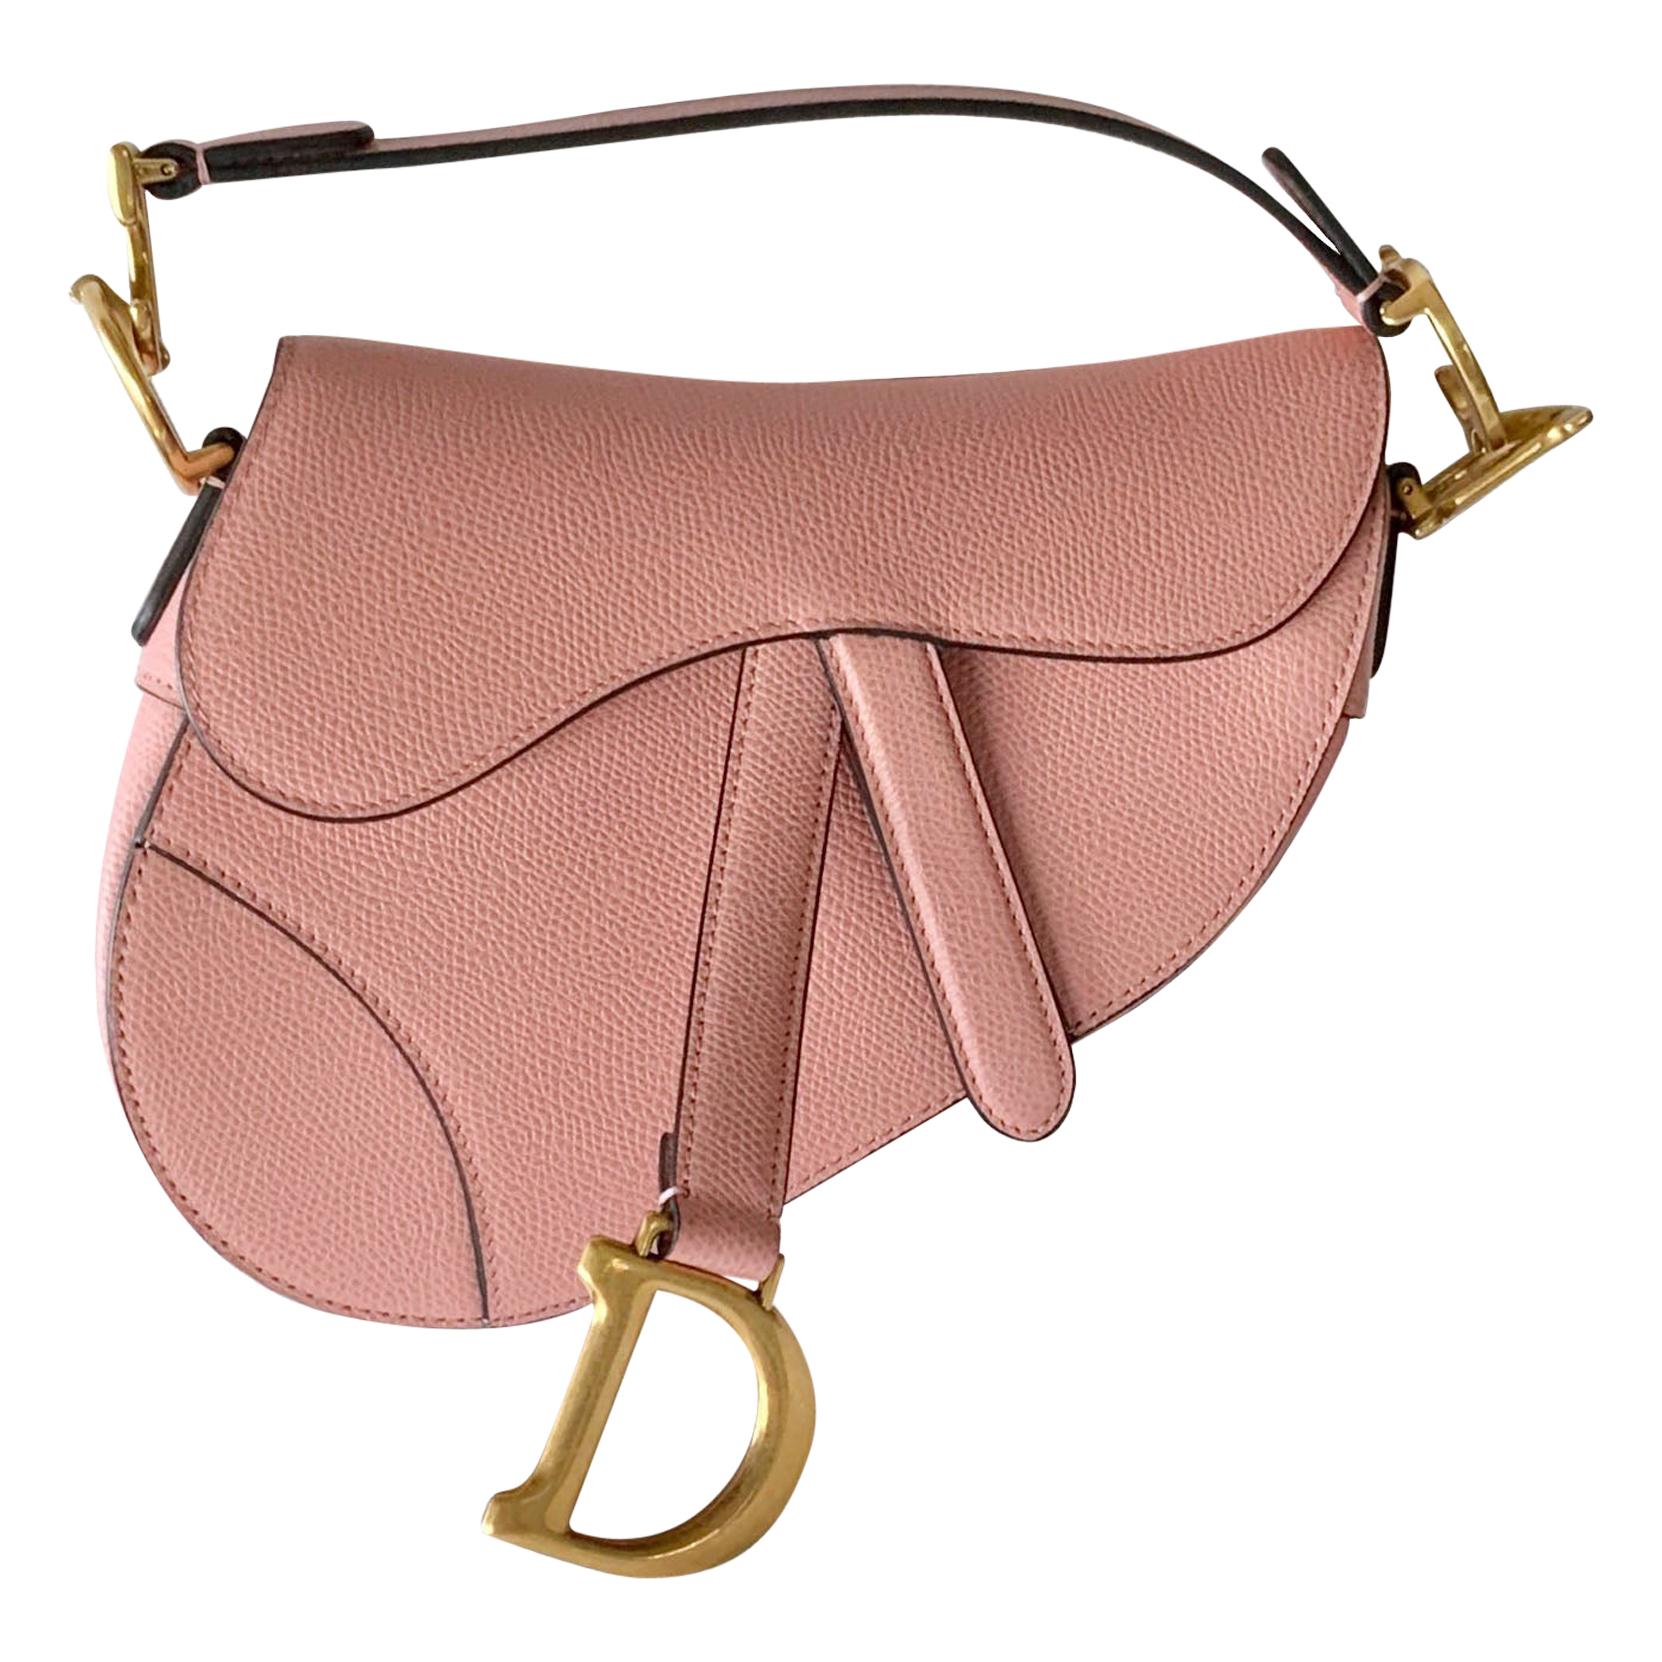 Christian Dior Saddle Bag Pink - 4 For Sale on 1stDibs